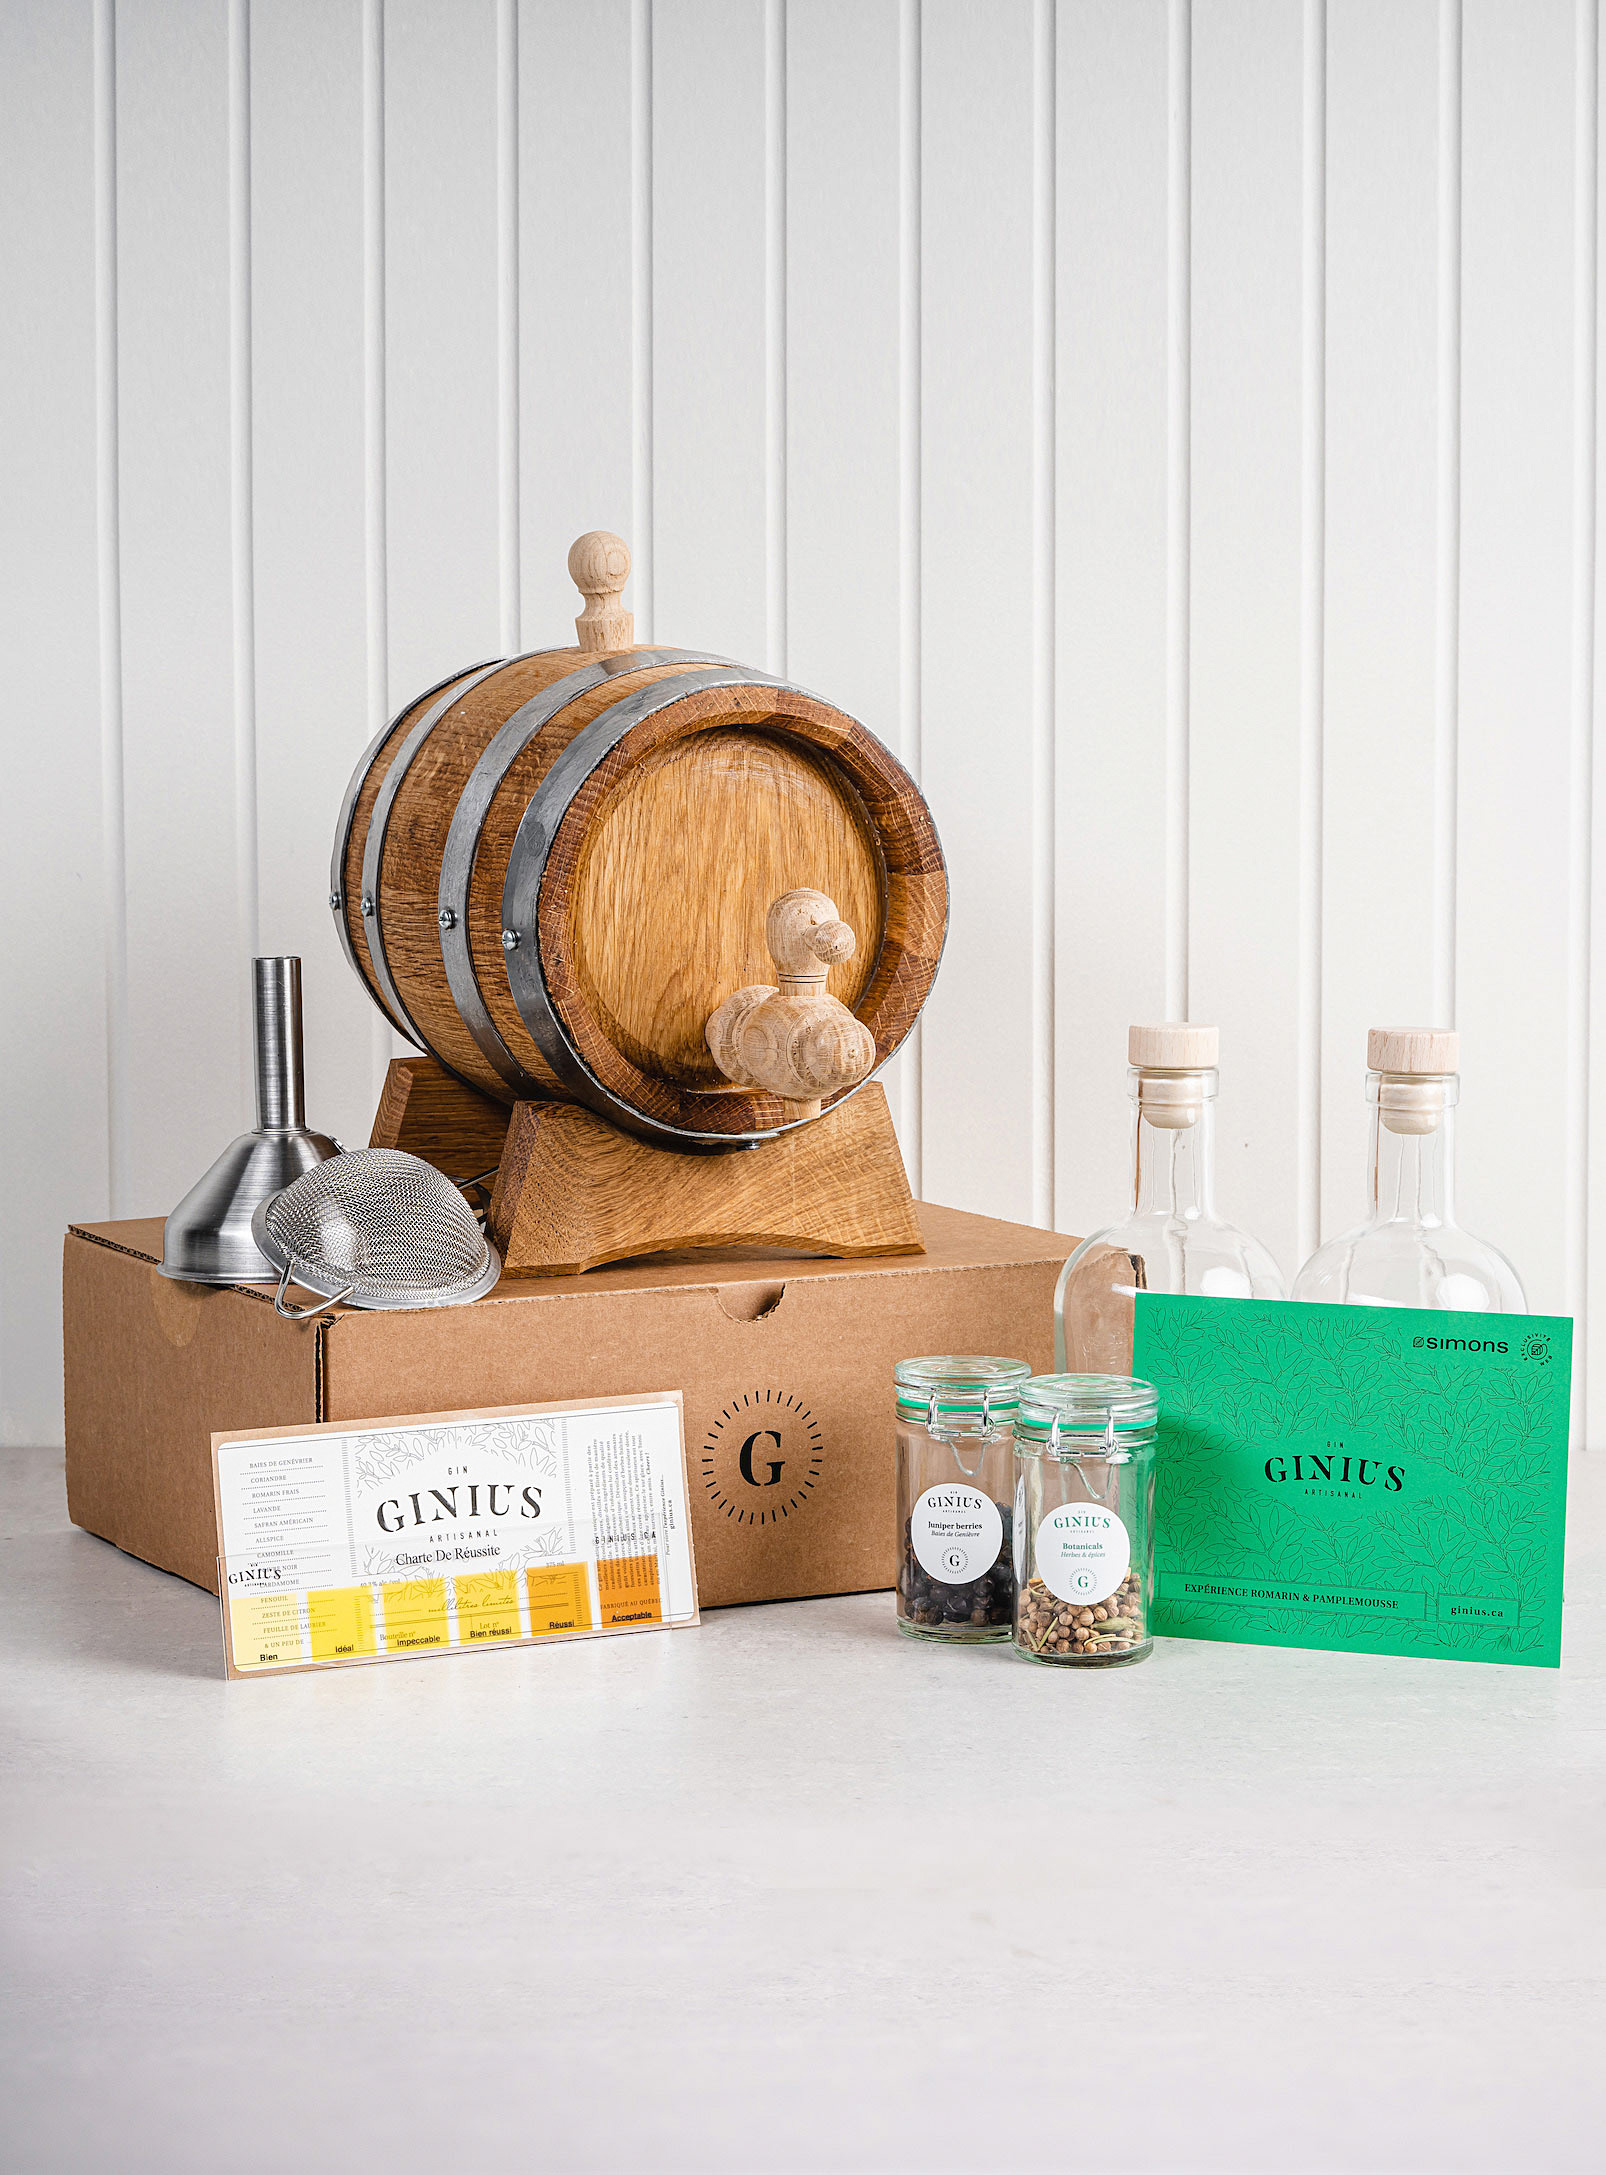 Ginius - L'ensemble barrique et aromates pour gin artisanal - Édition spéciale limitée